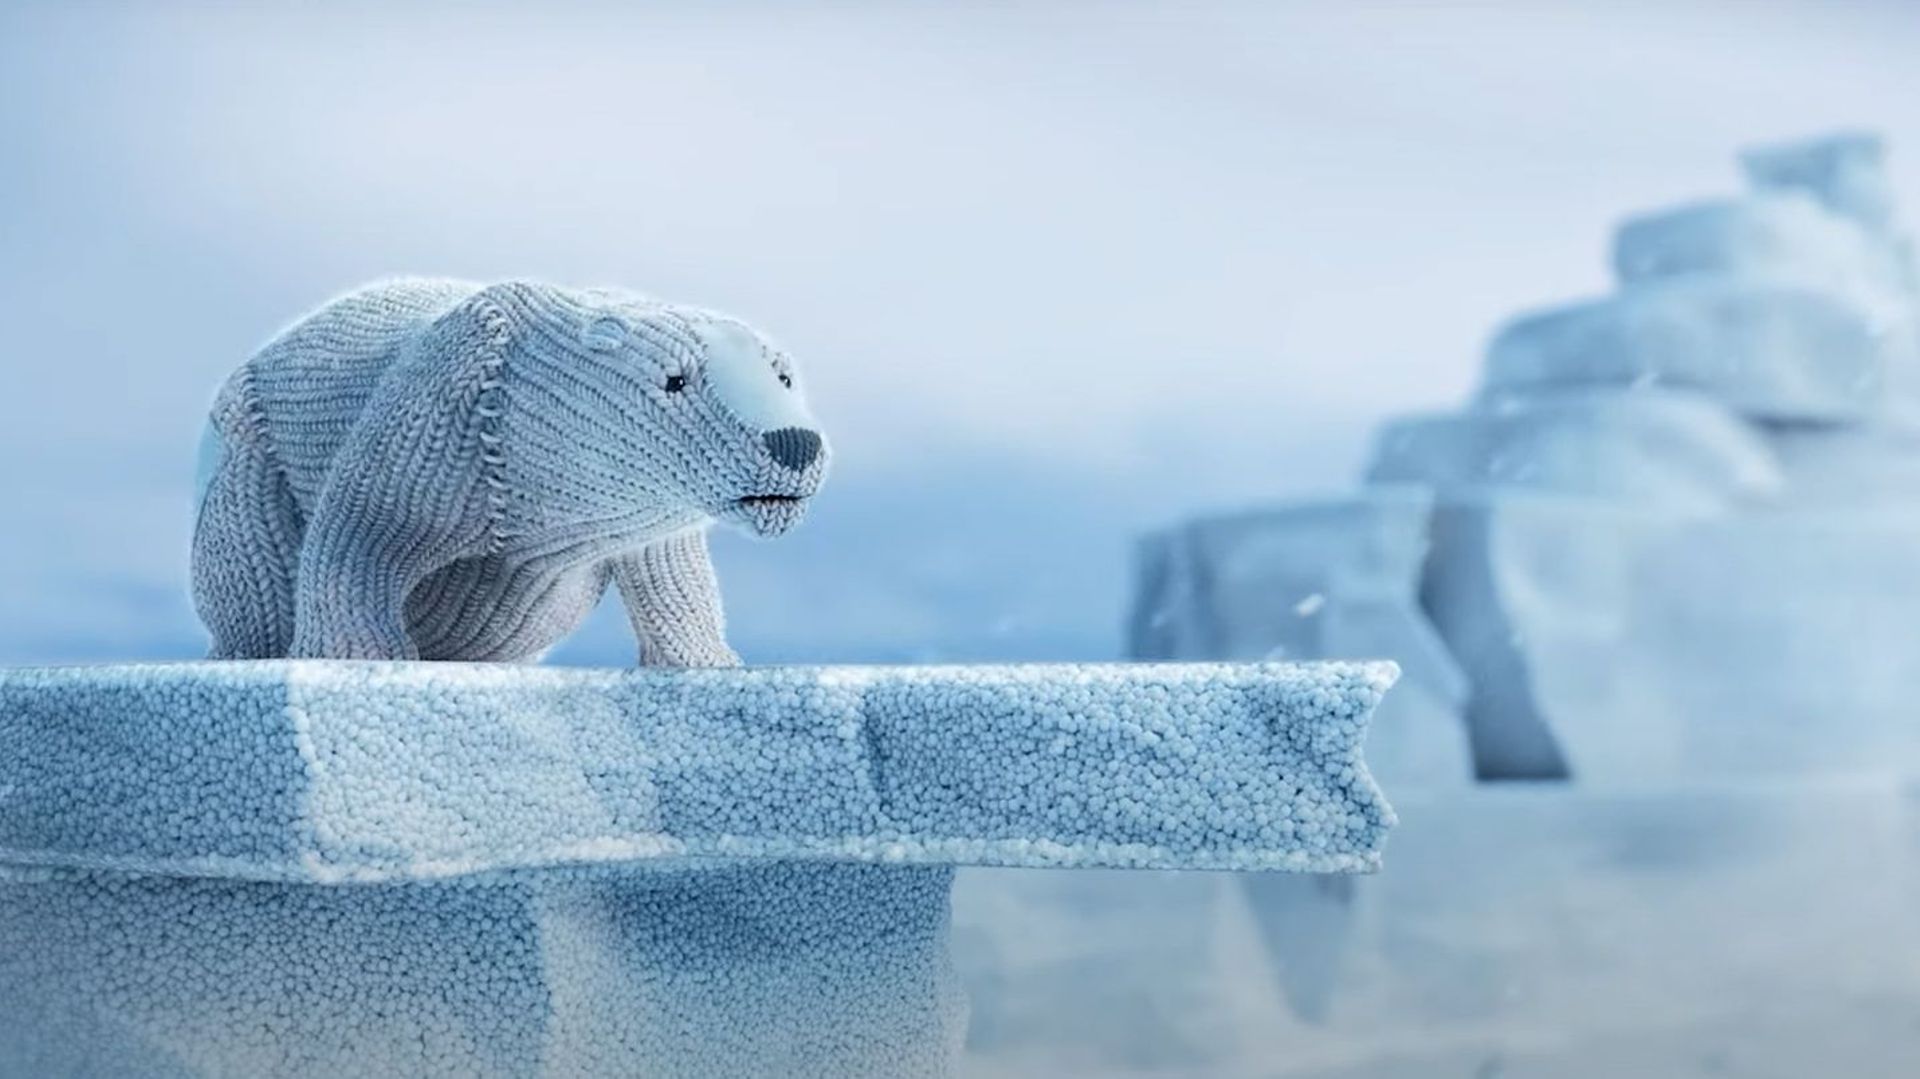 Des ours populaires premiers réfugiés climatiques dans un film d'animation puissant